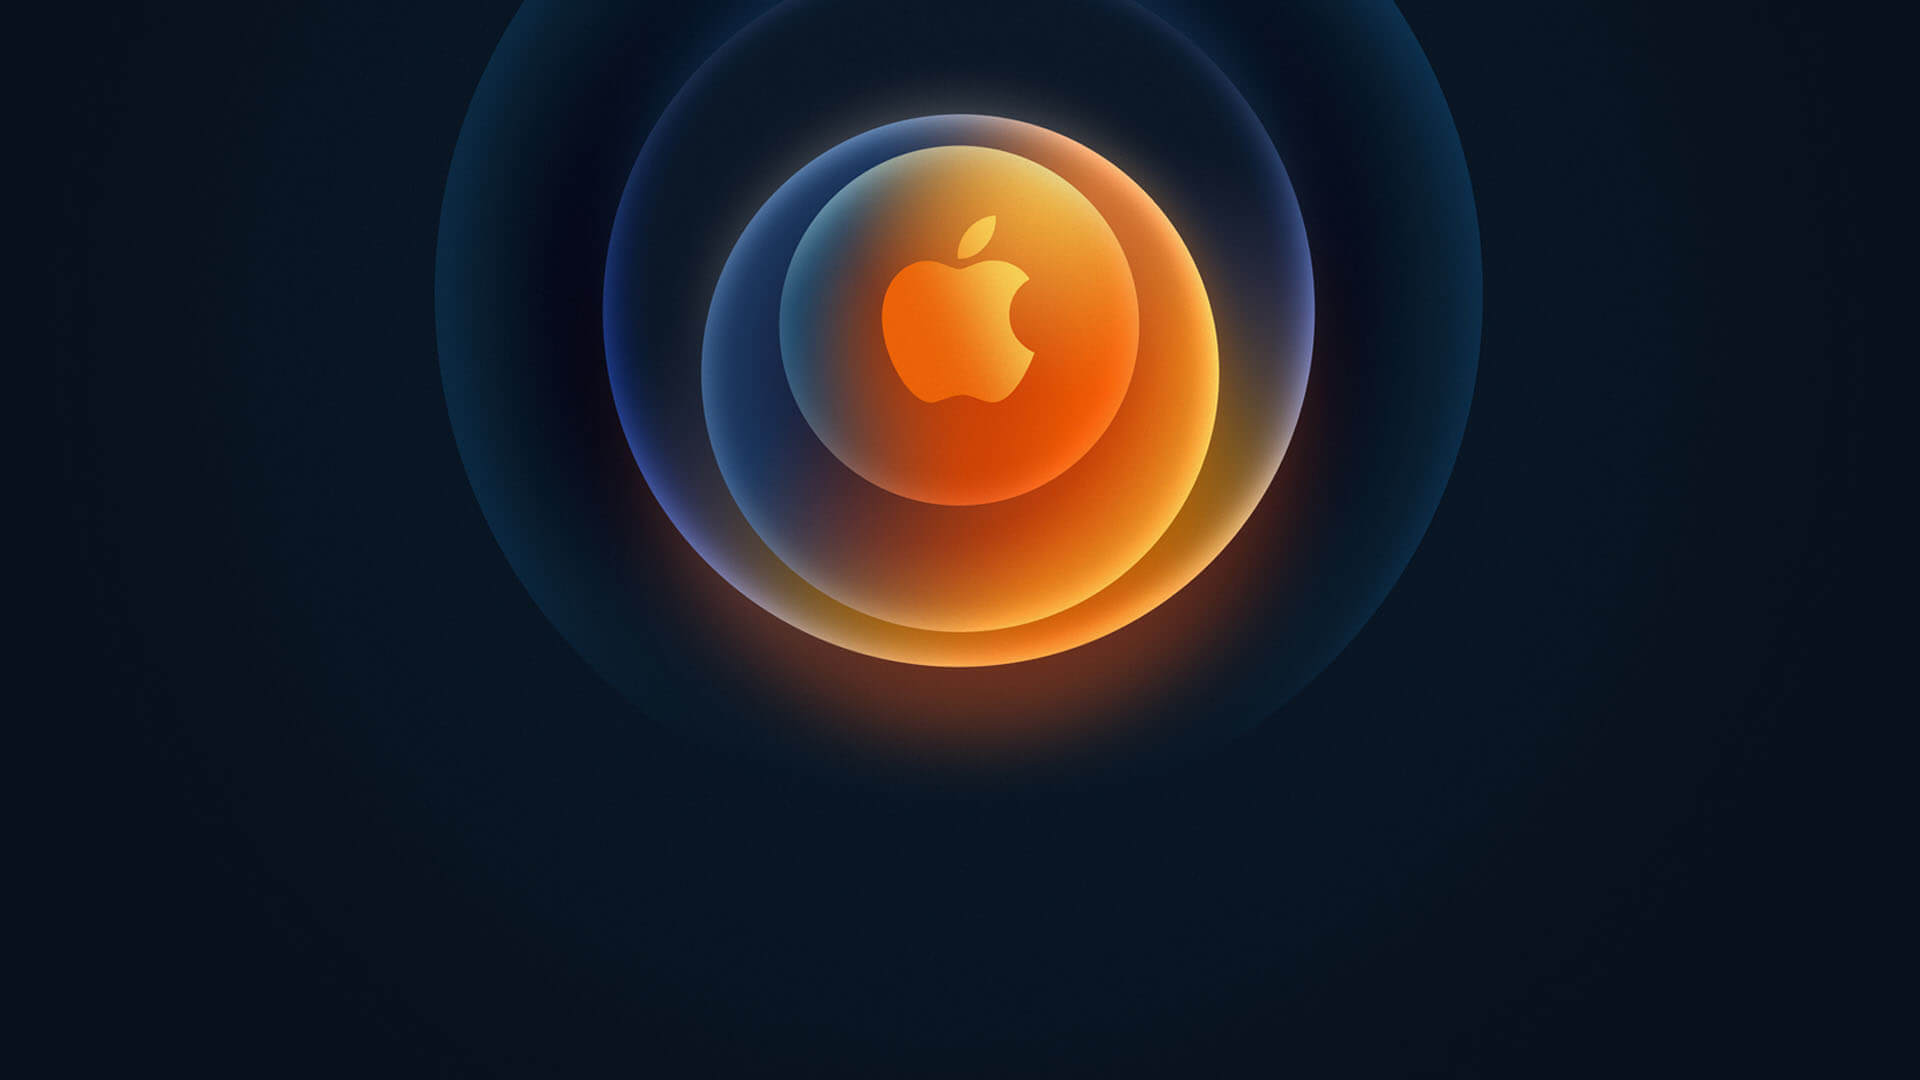 Apple’ın 13 Ekim Etkinliğinde Tanıtılacak iPhone 12 Ailesi ve Diğer Tüm Ürünlerle İlgili Bilgiler Sızdı